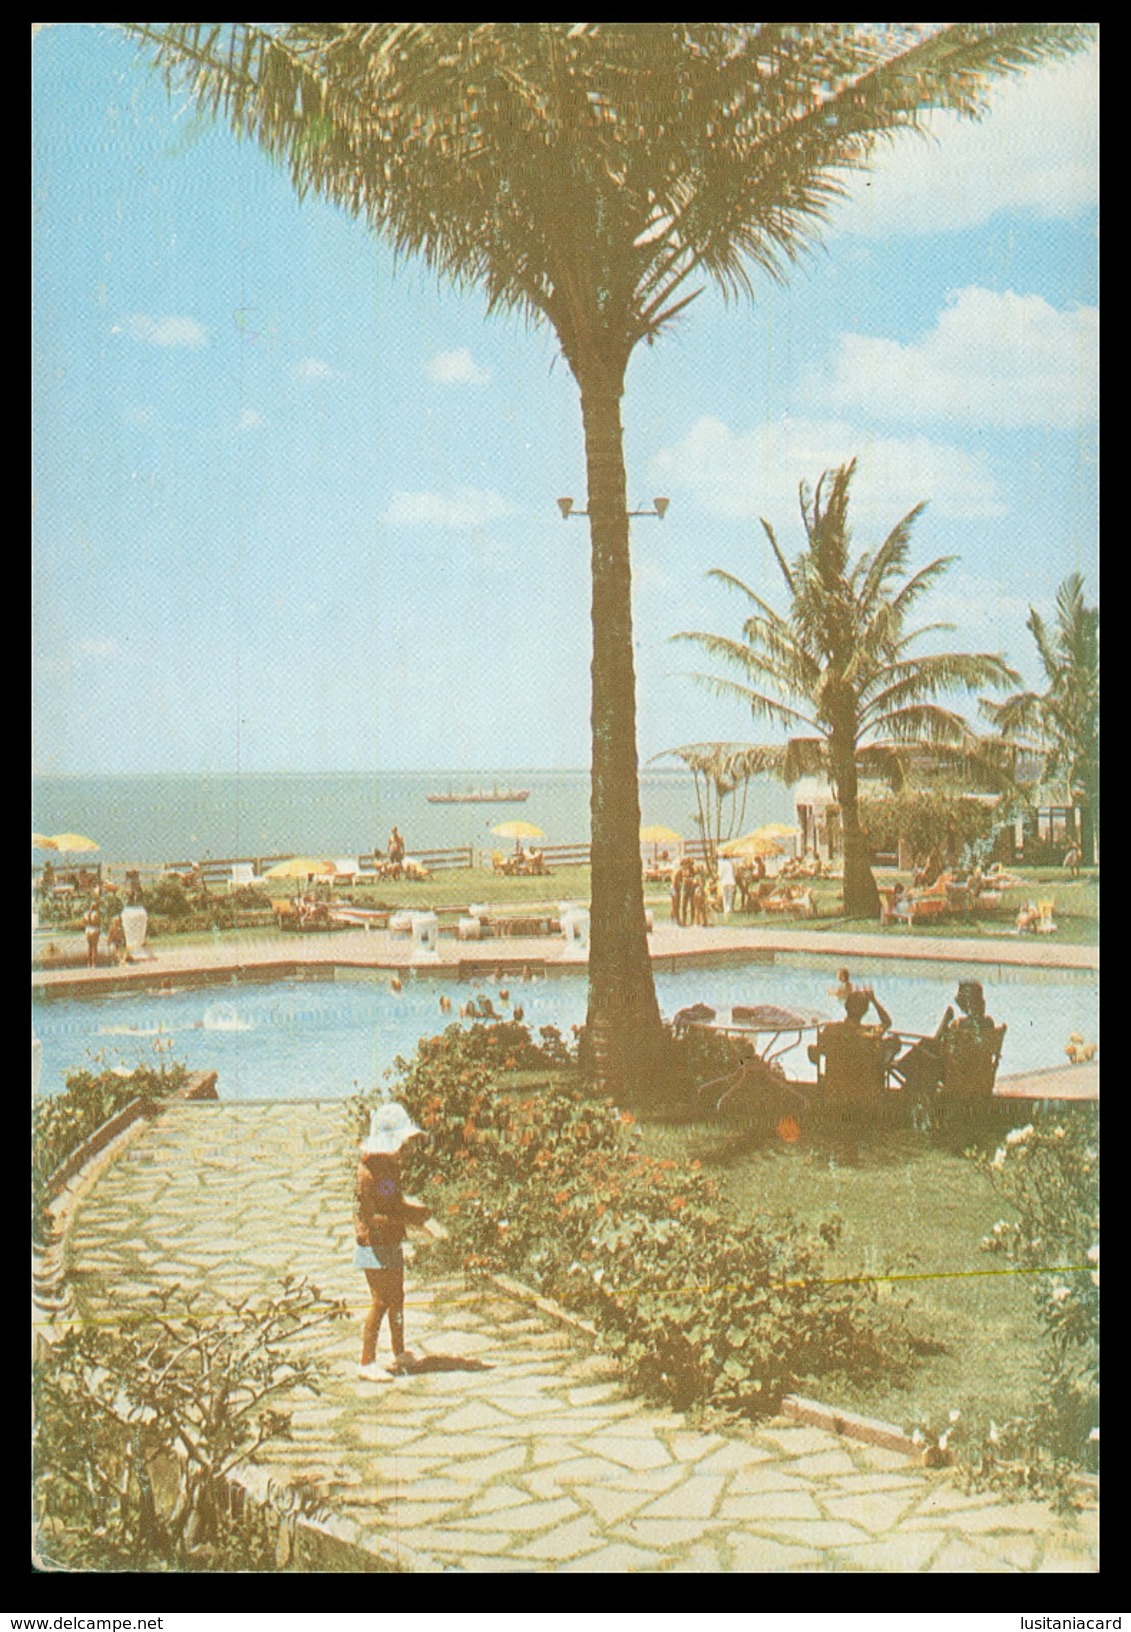 MAPUTO - HOTEIS E RESTAURANTES - Piscina Do Hotel Polana.  Carte Postale - Mozambique